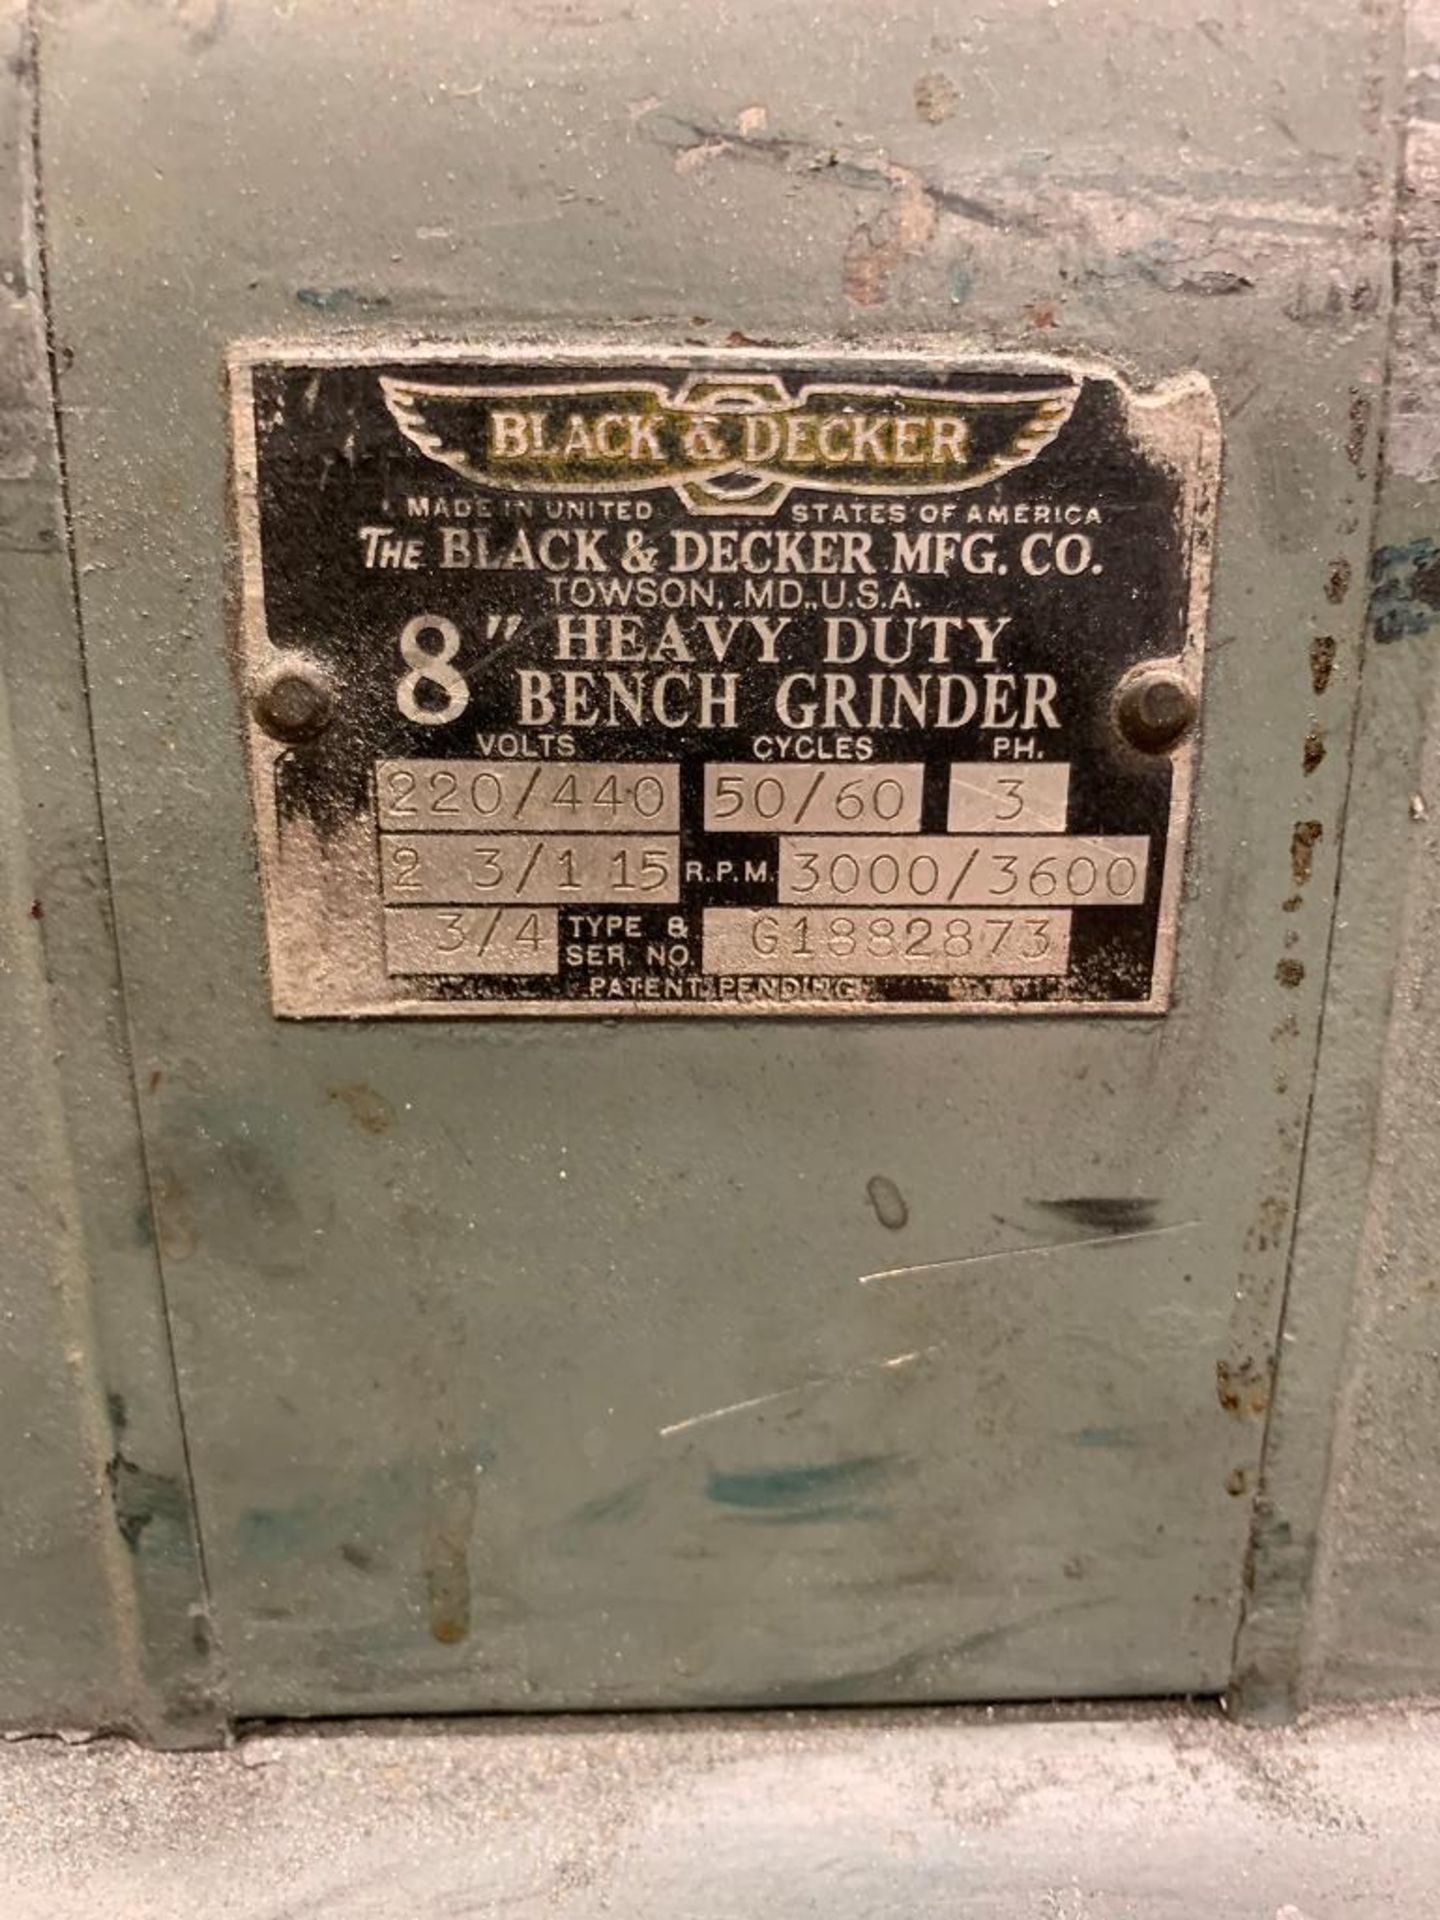 Black & Decker 8" Double End Bench Grinder, 220/440 V, 3000/3600 RPM - Image 3 of 3